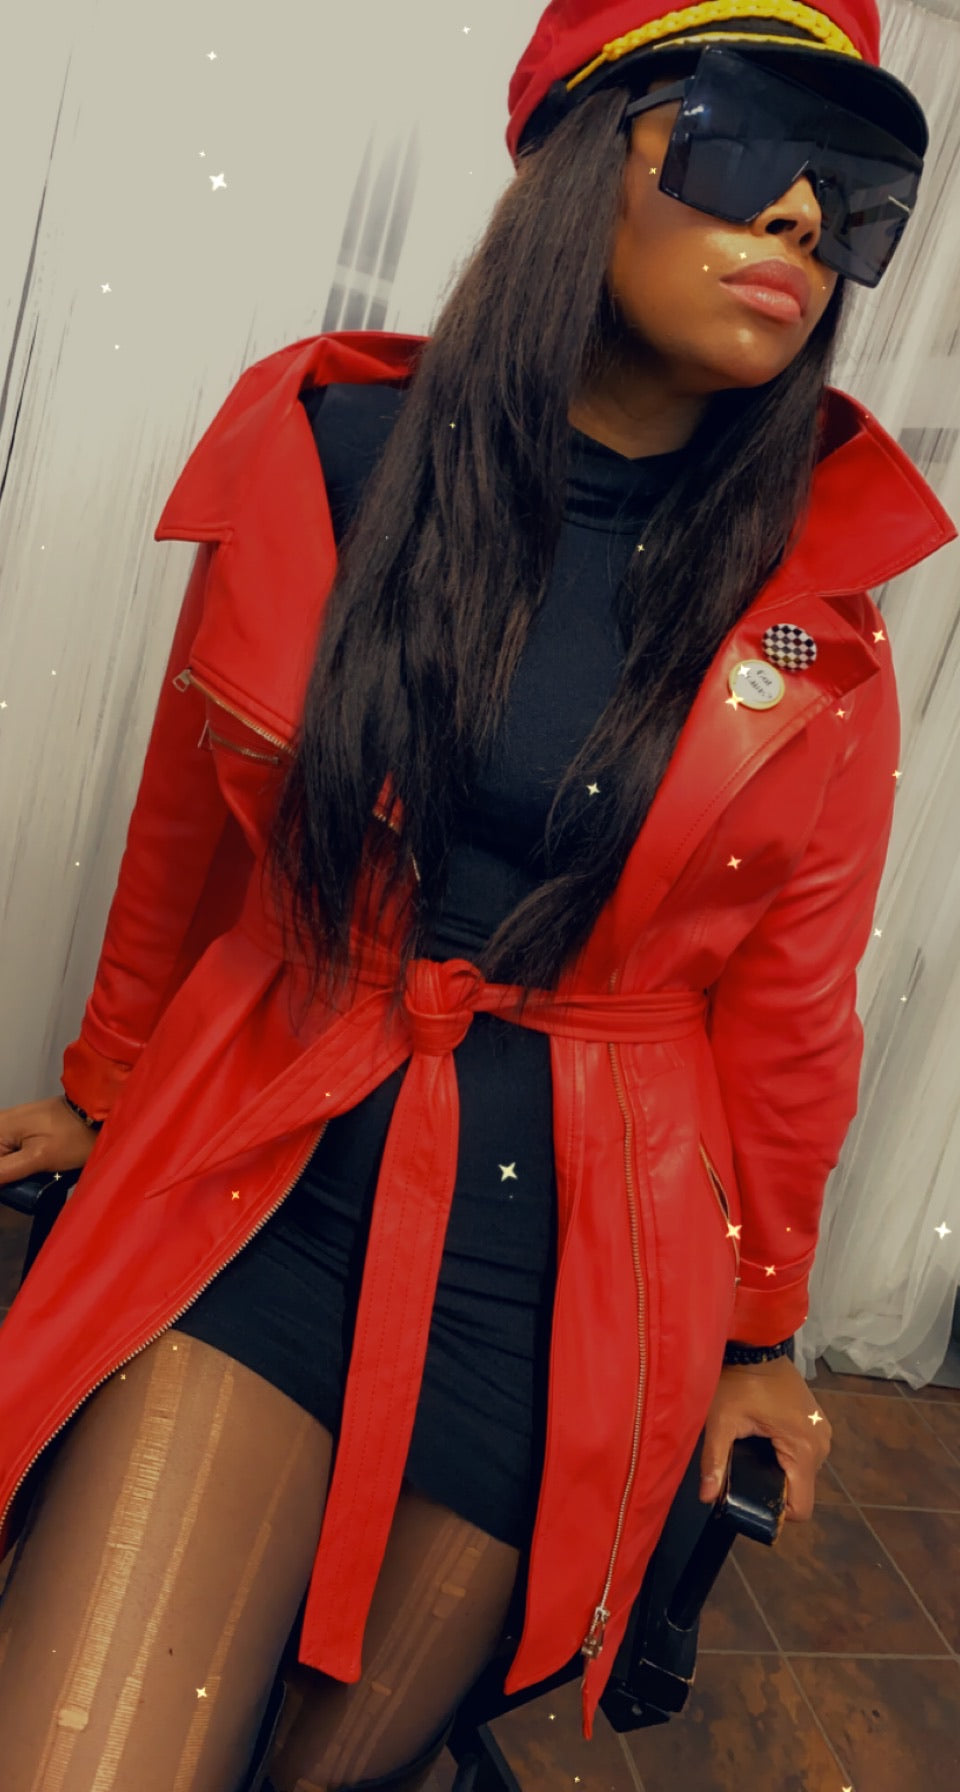 Vintage “Fire Red” Jacket/Dress